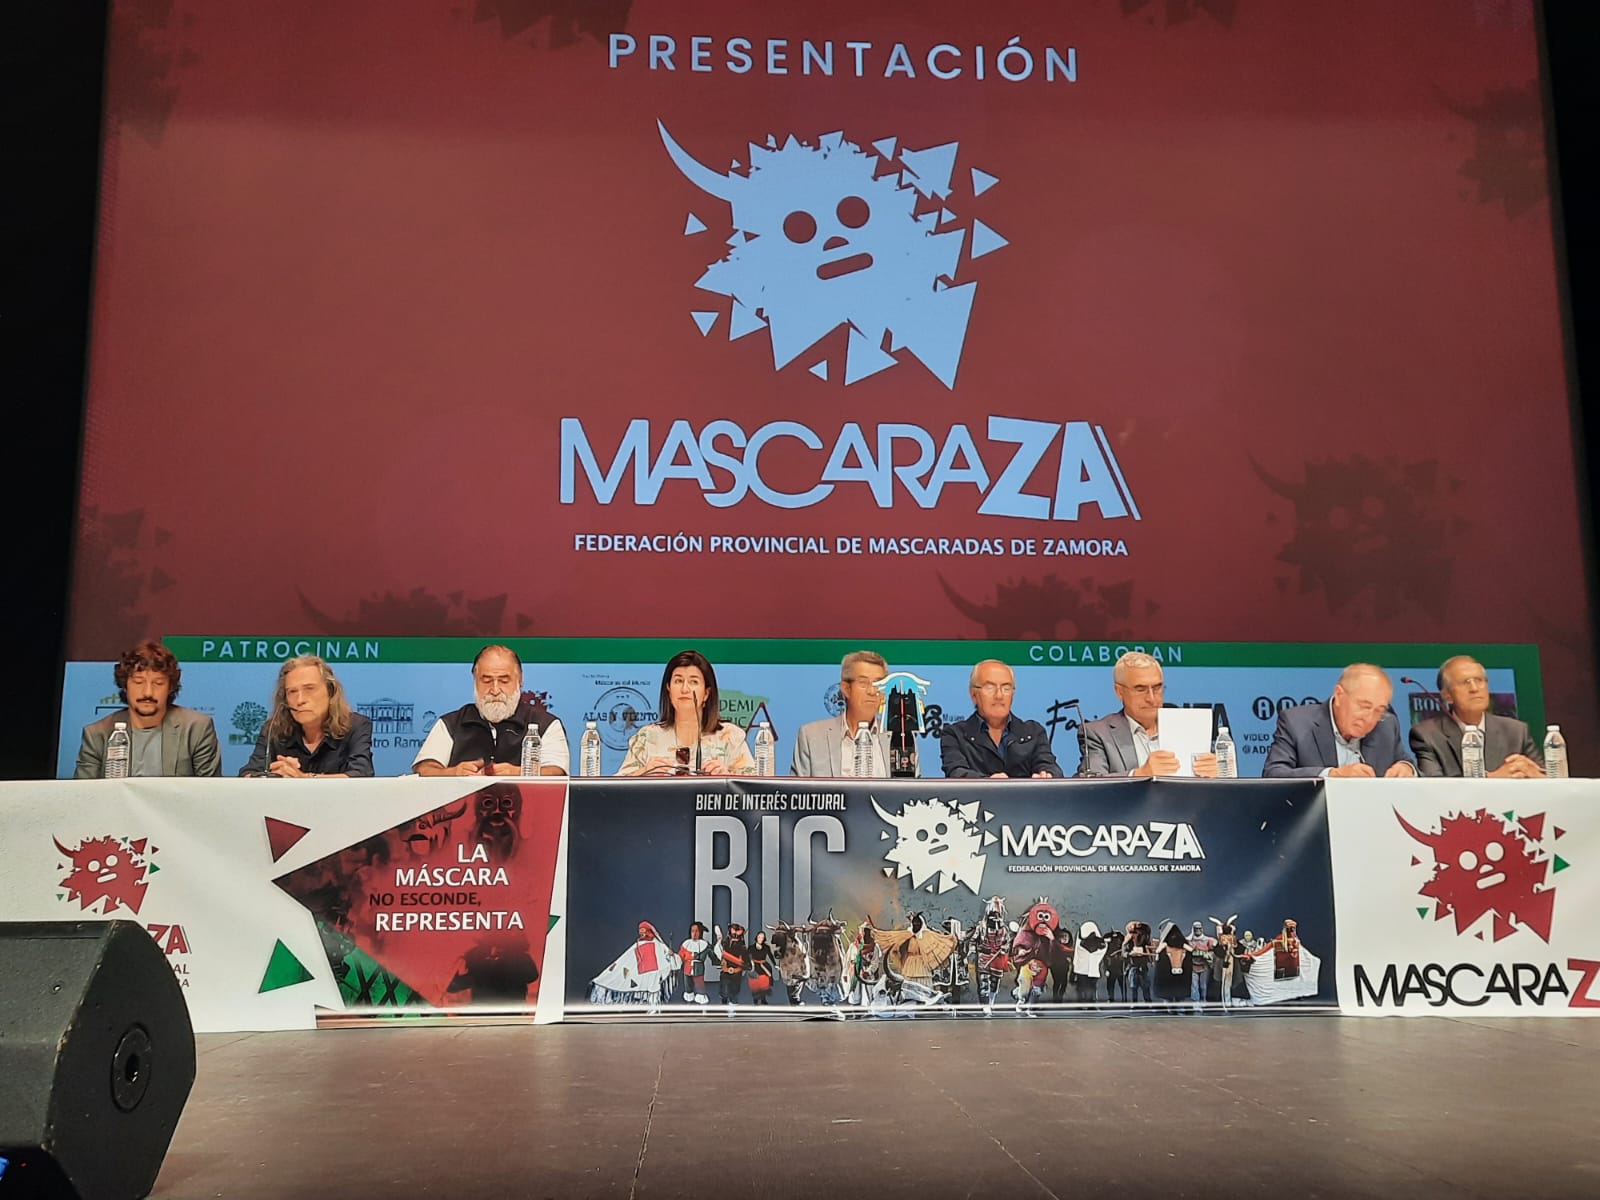 La Cátedra de Estudios sobre la Tradición colabora con MascaraZA, la nueva federación de mascaradas de la provincia de Zamora